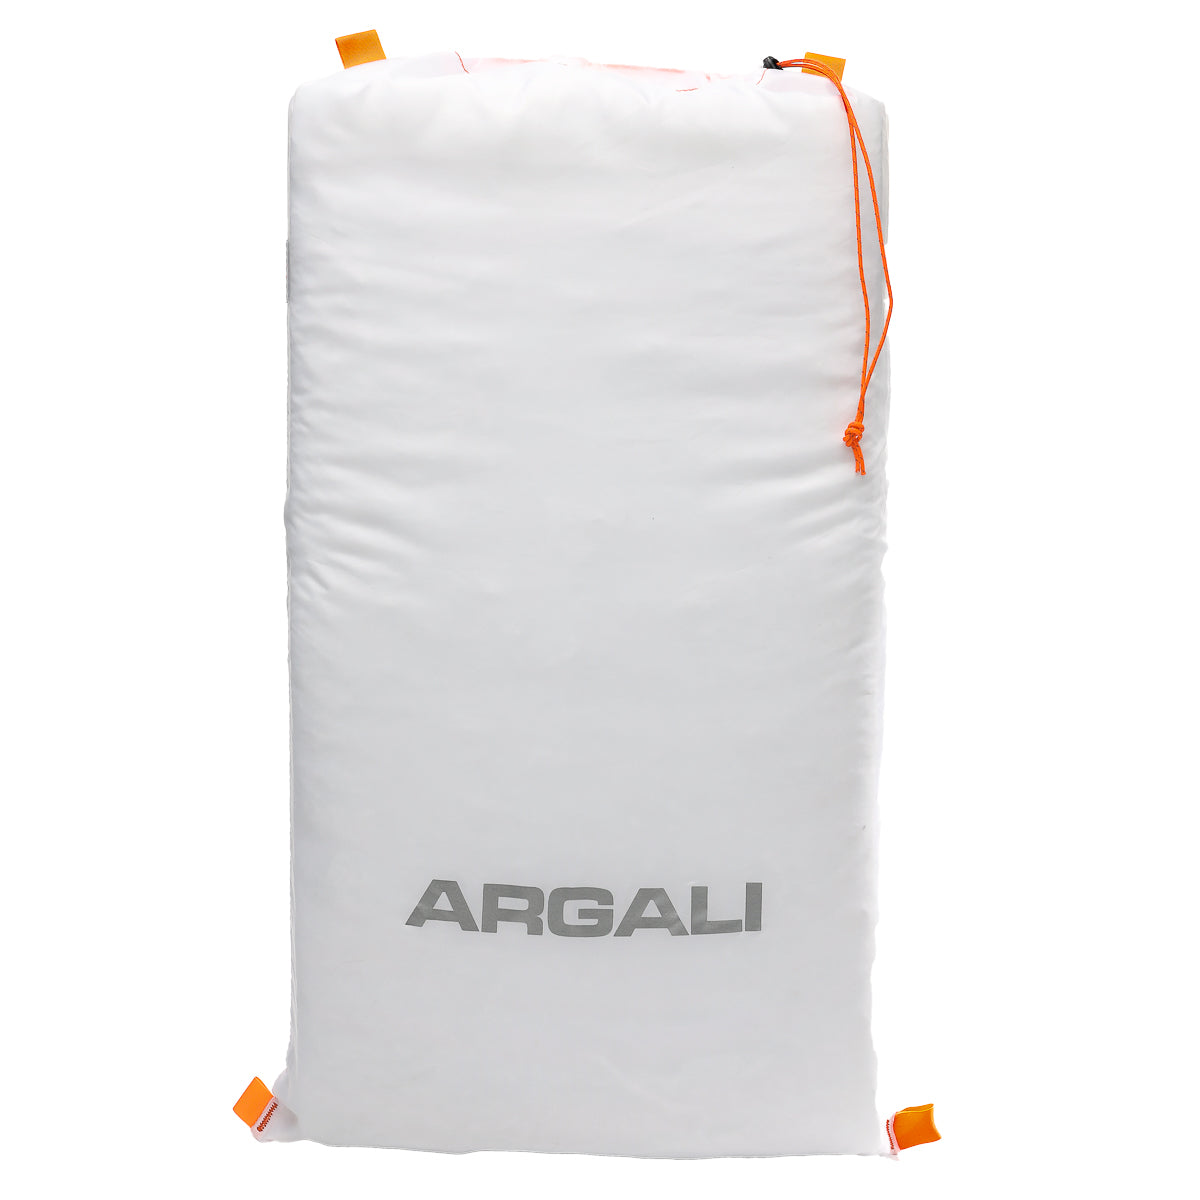 Argali - Deer Size High Country Pack Game Bag Set